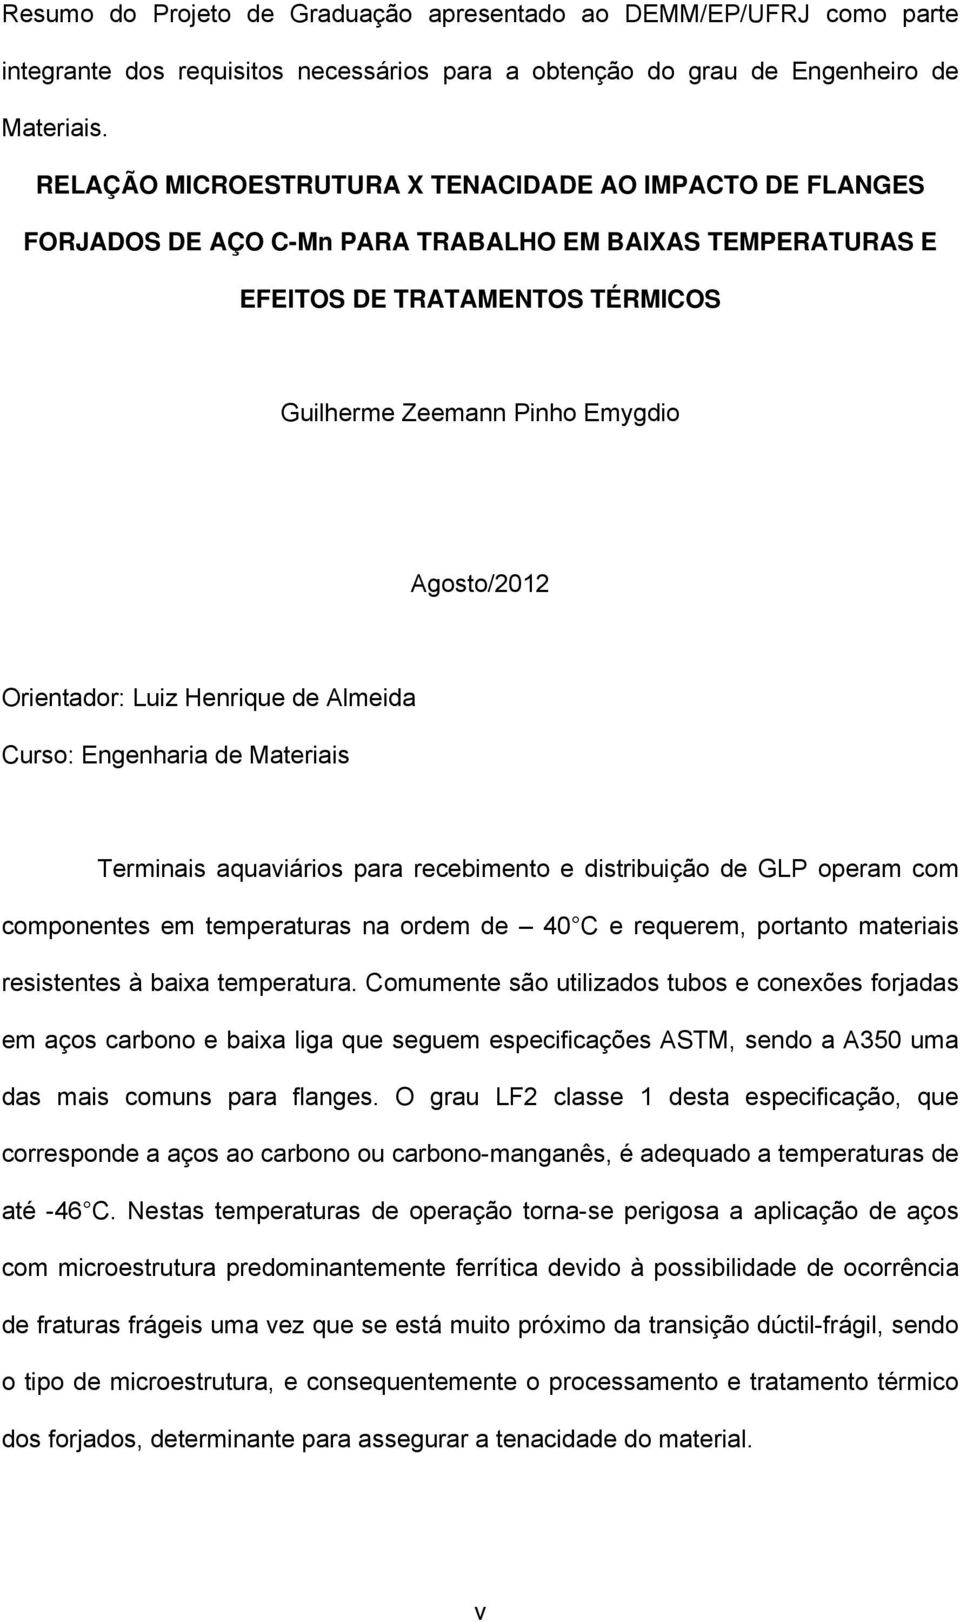 Orientador: Luiz Henrique de Almeida Curso: Engenharia de Materiais Terminais aquaviários para recebimento e distribuição de GLP operam com componentes em temperaturas na ordem de 40 C e requerem,